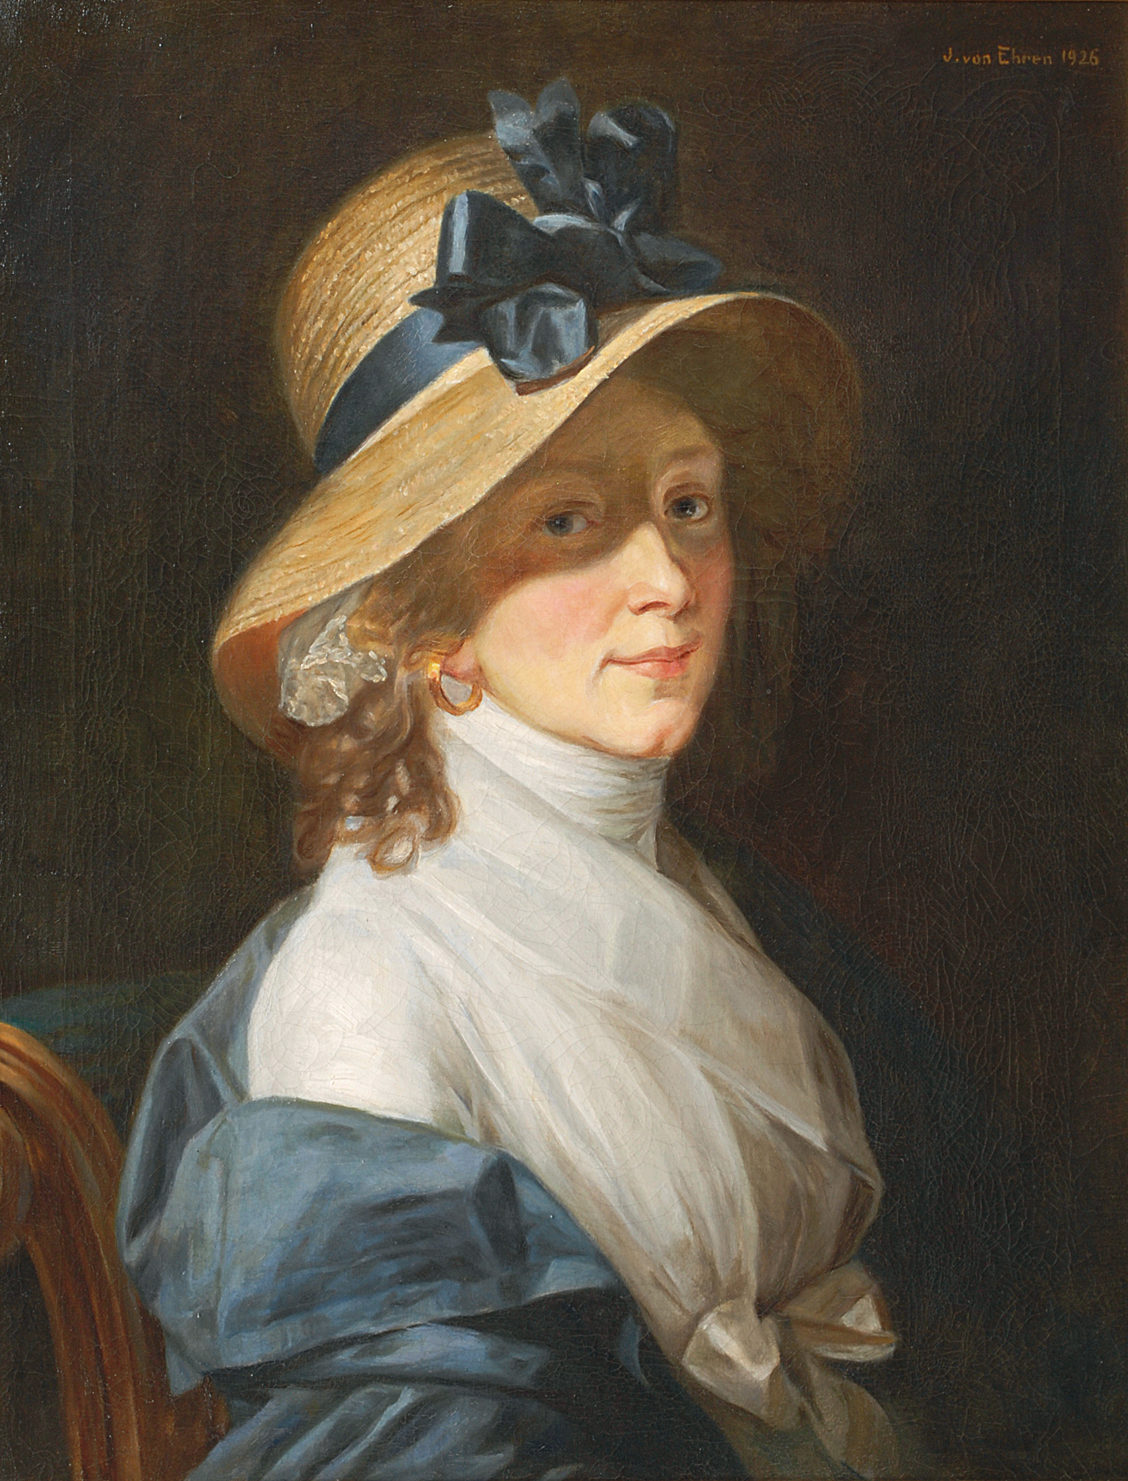 Mrs. Elisabeth Hudtwalker, born Moller